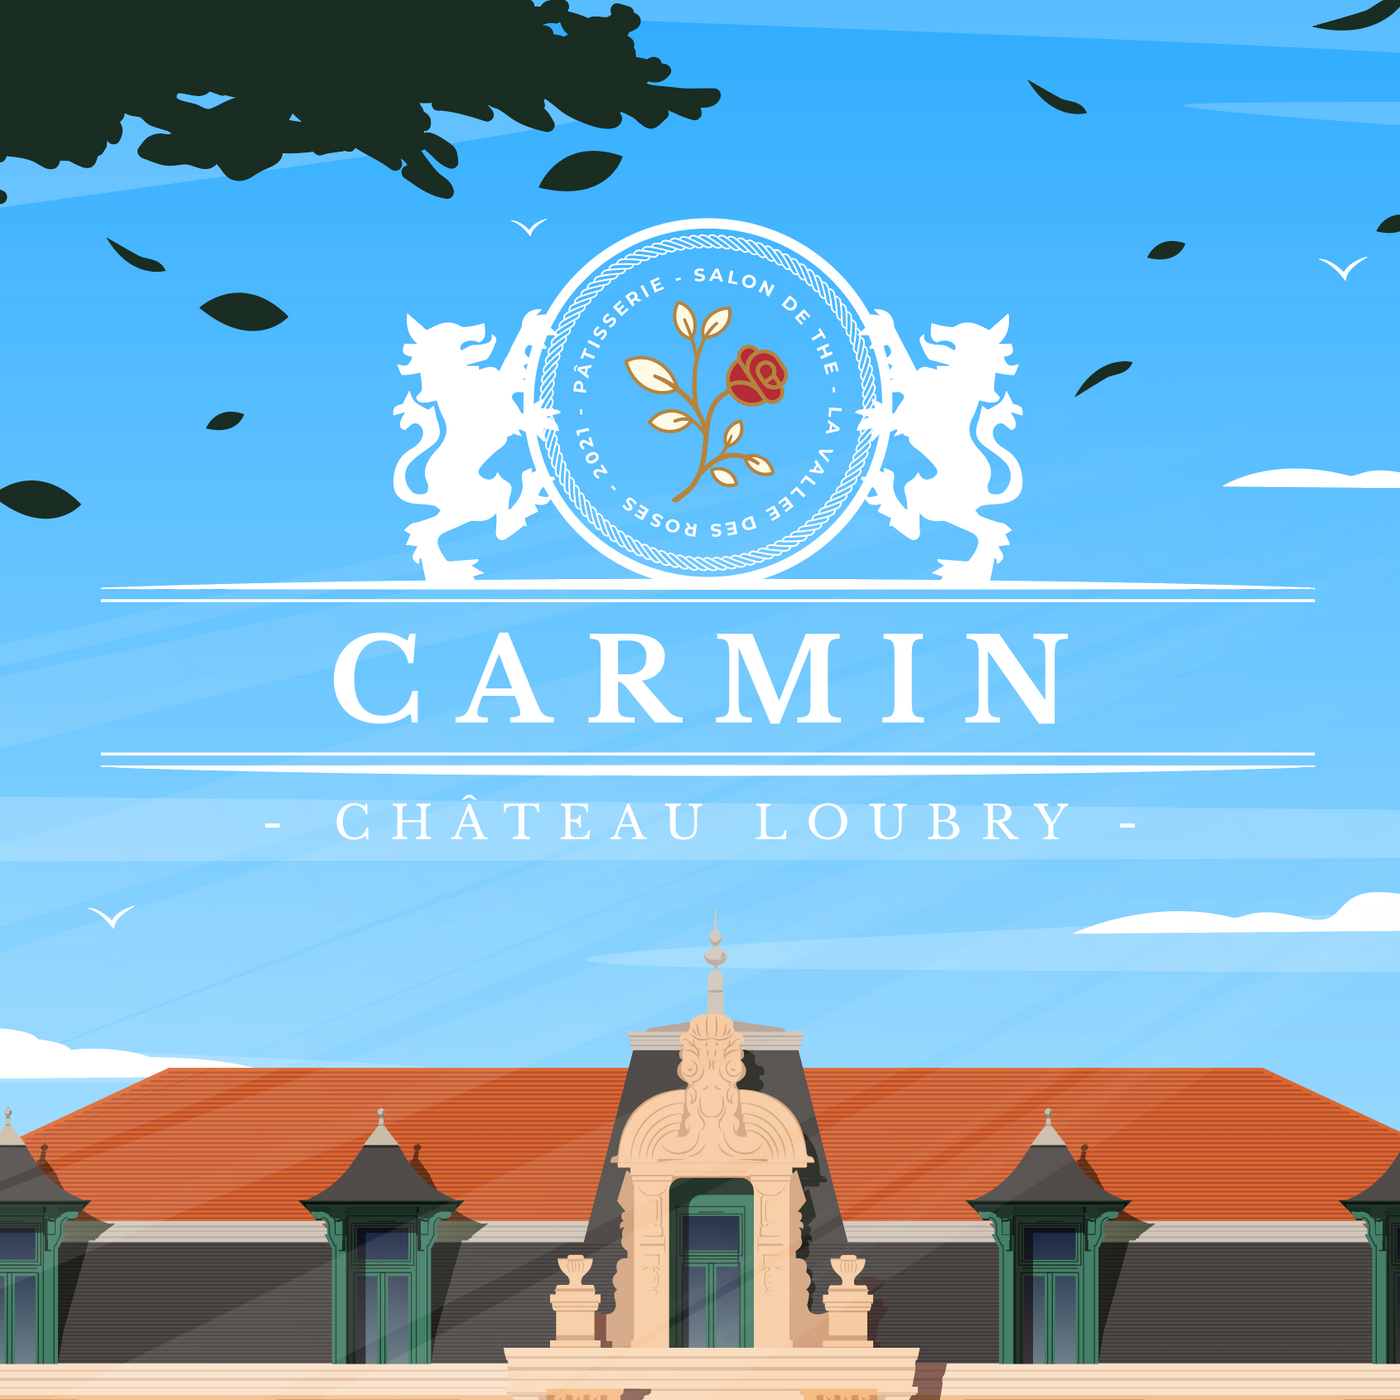 AFFICHE LE CARMIN - CHÂTEAU LOUBRY